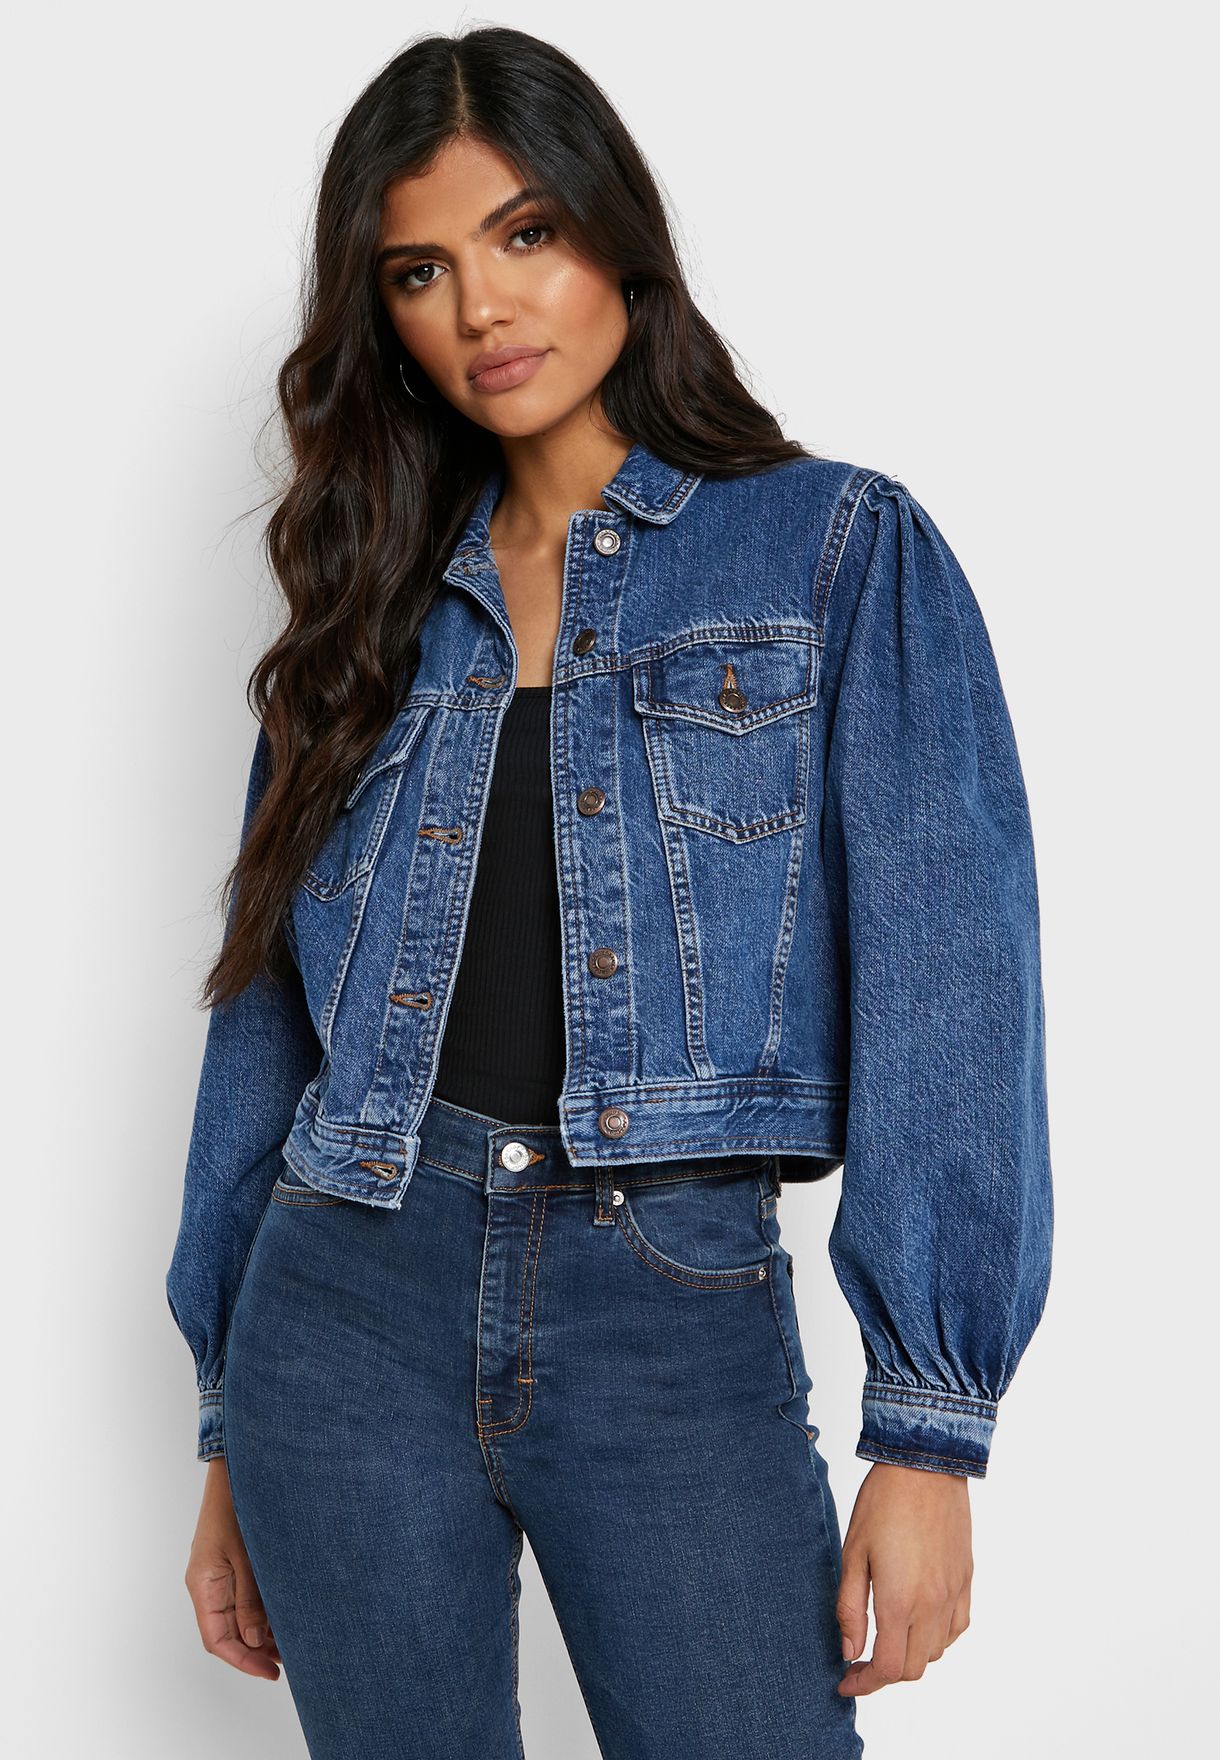 puffy shoulder jean jacket